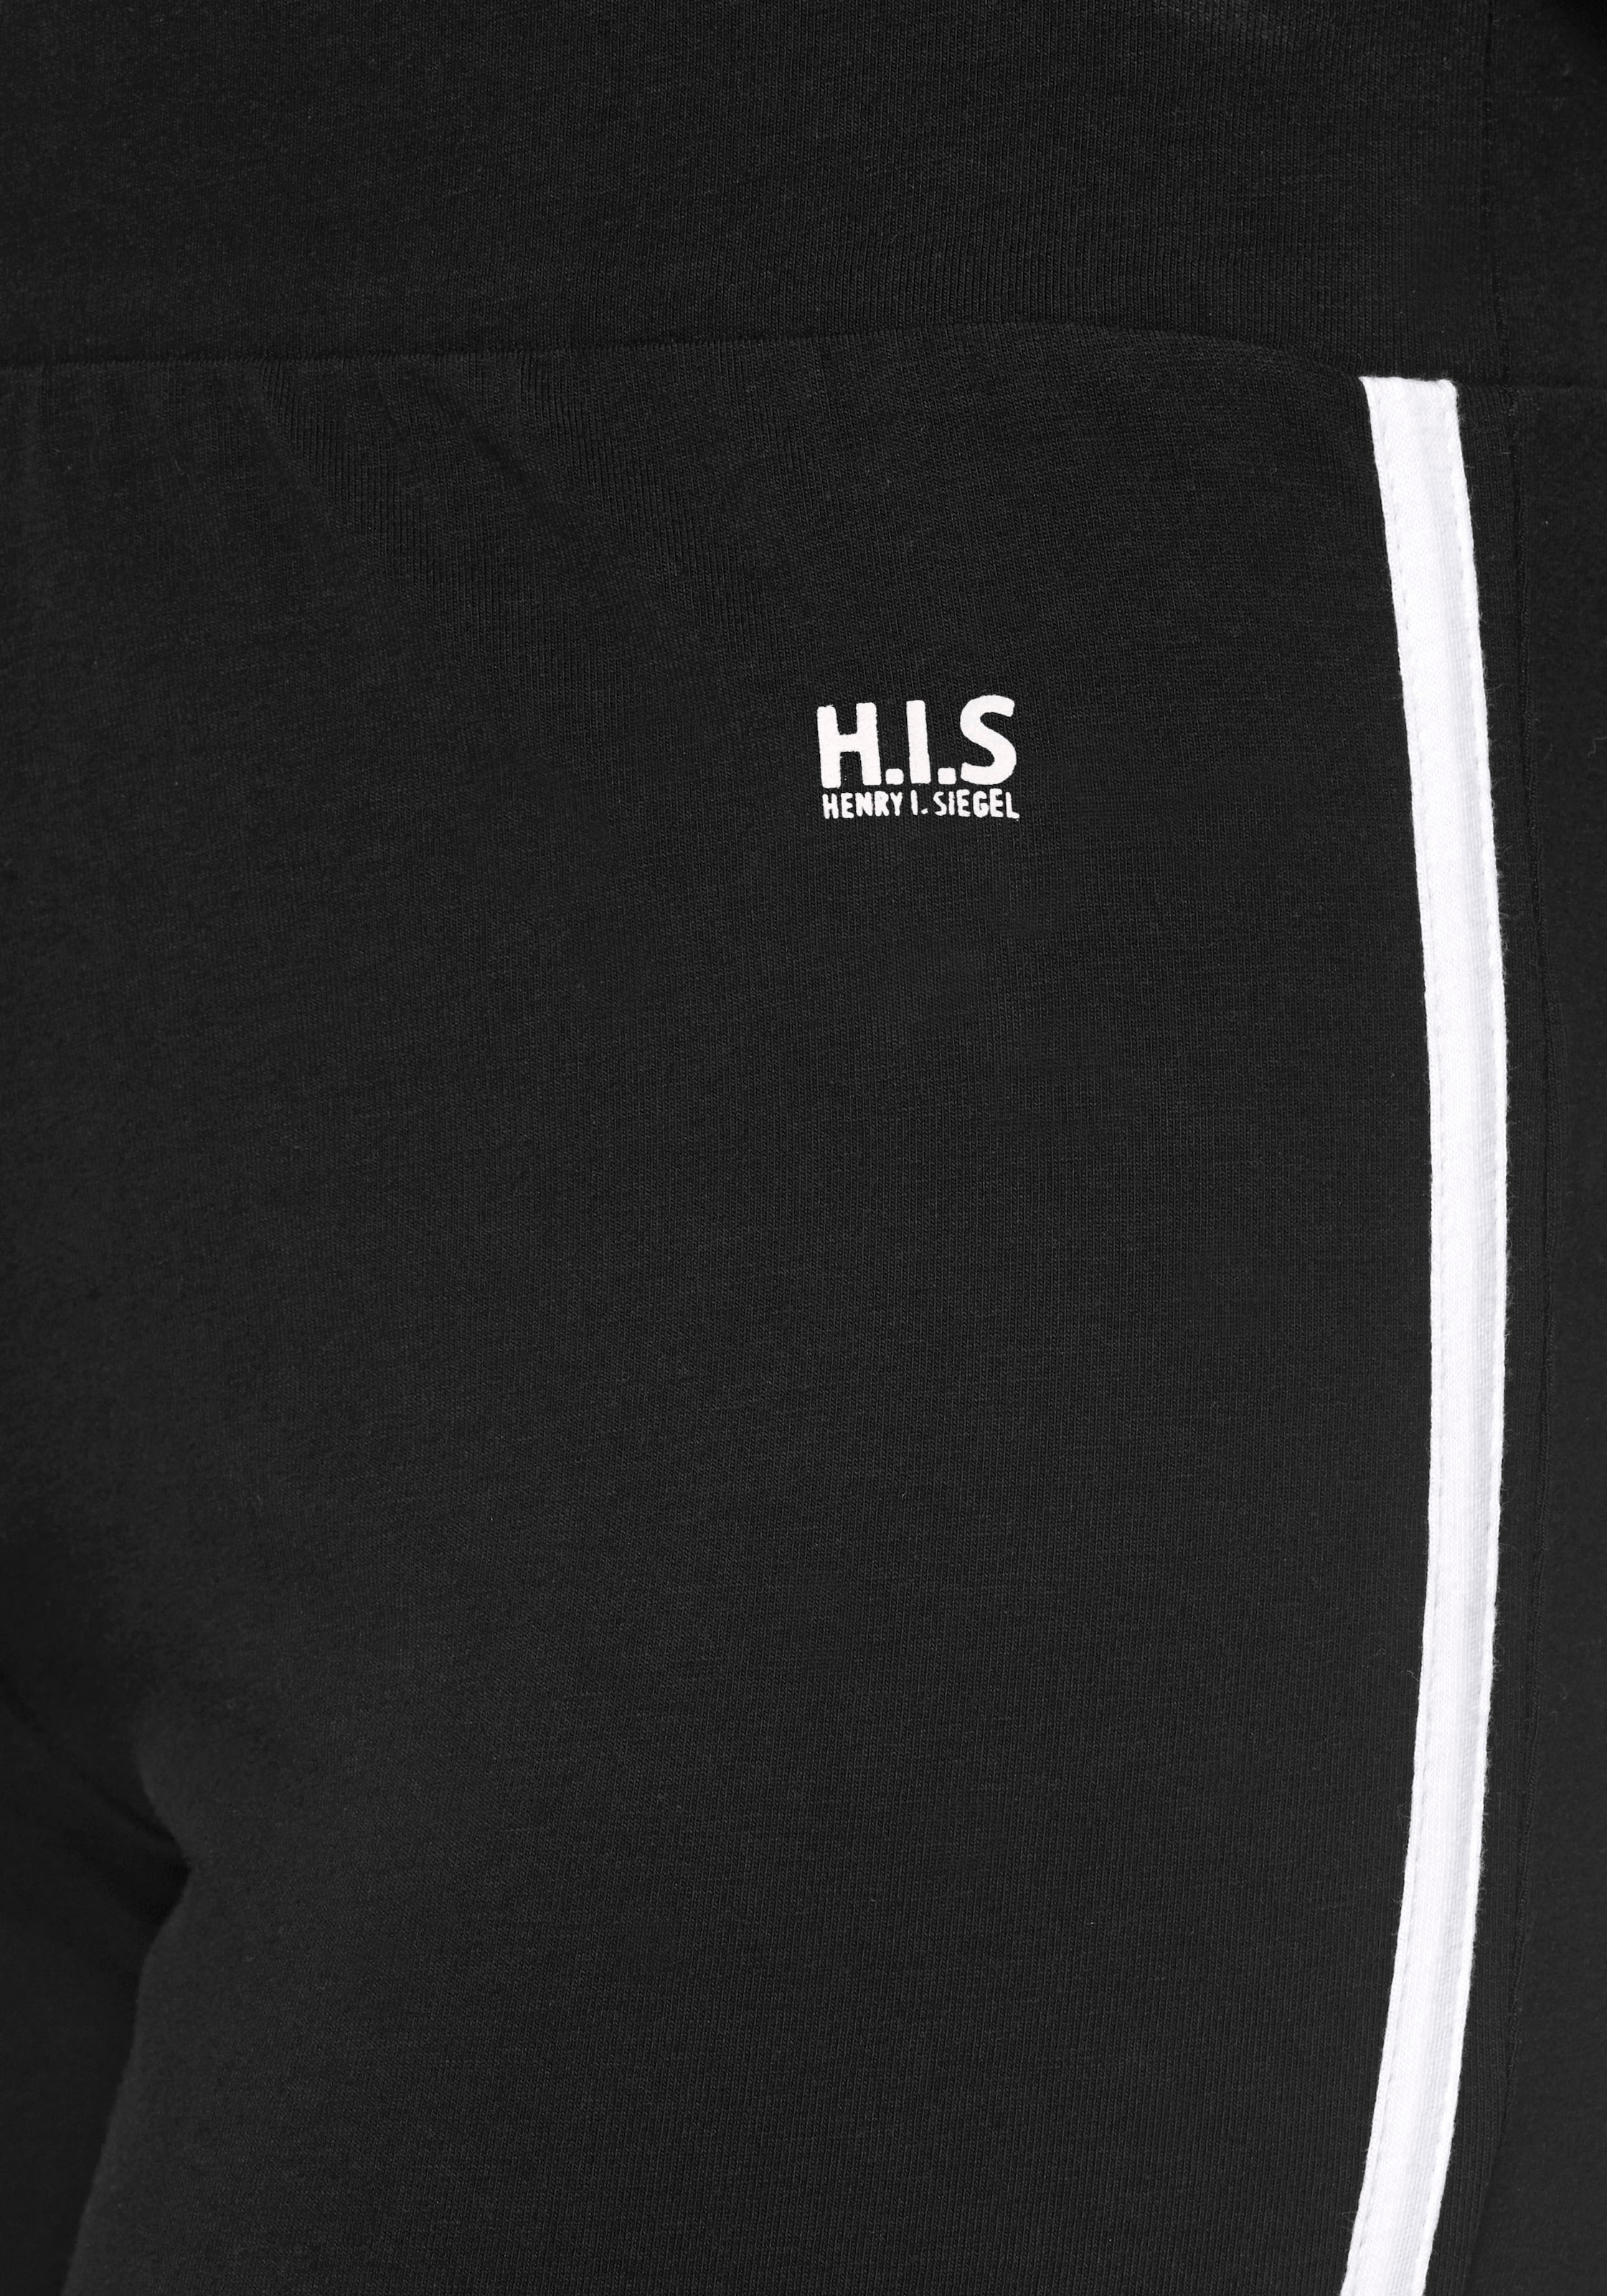 H.I.S Jazzpants, mit einseitig aufgesetztem Band am Bein